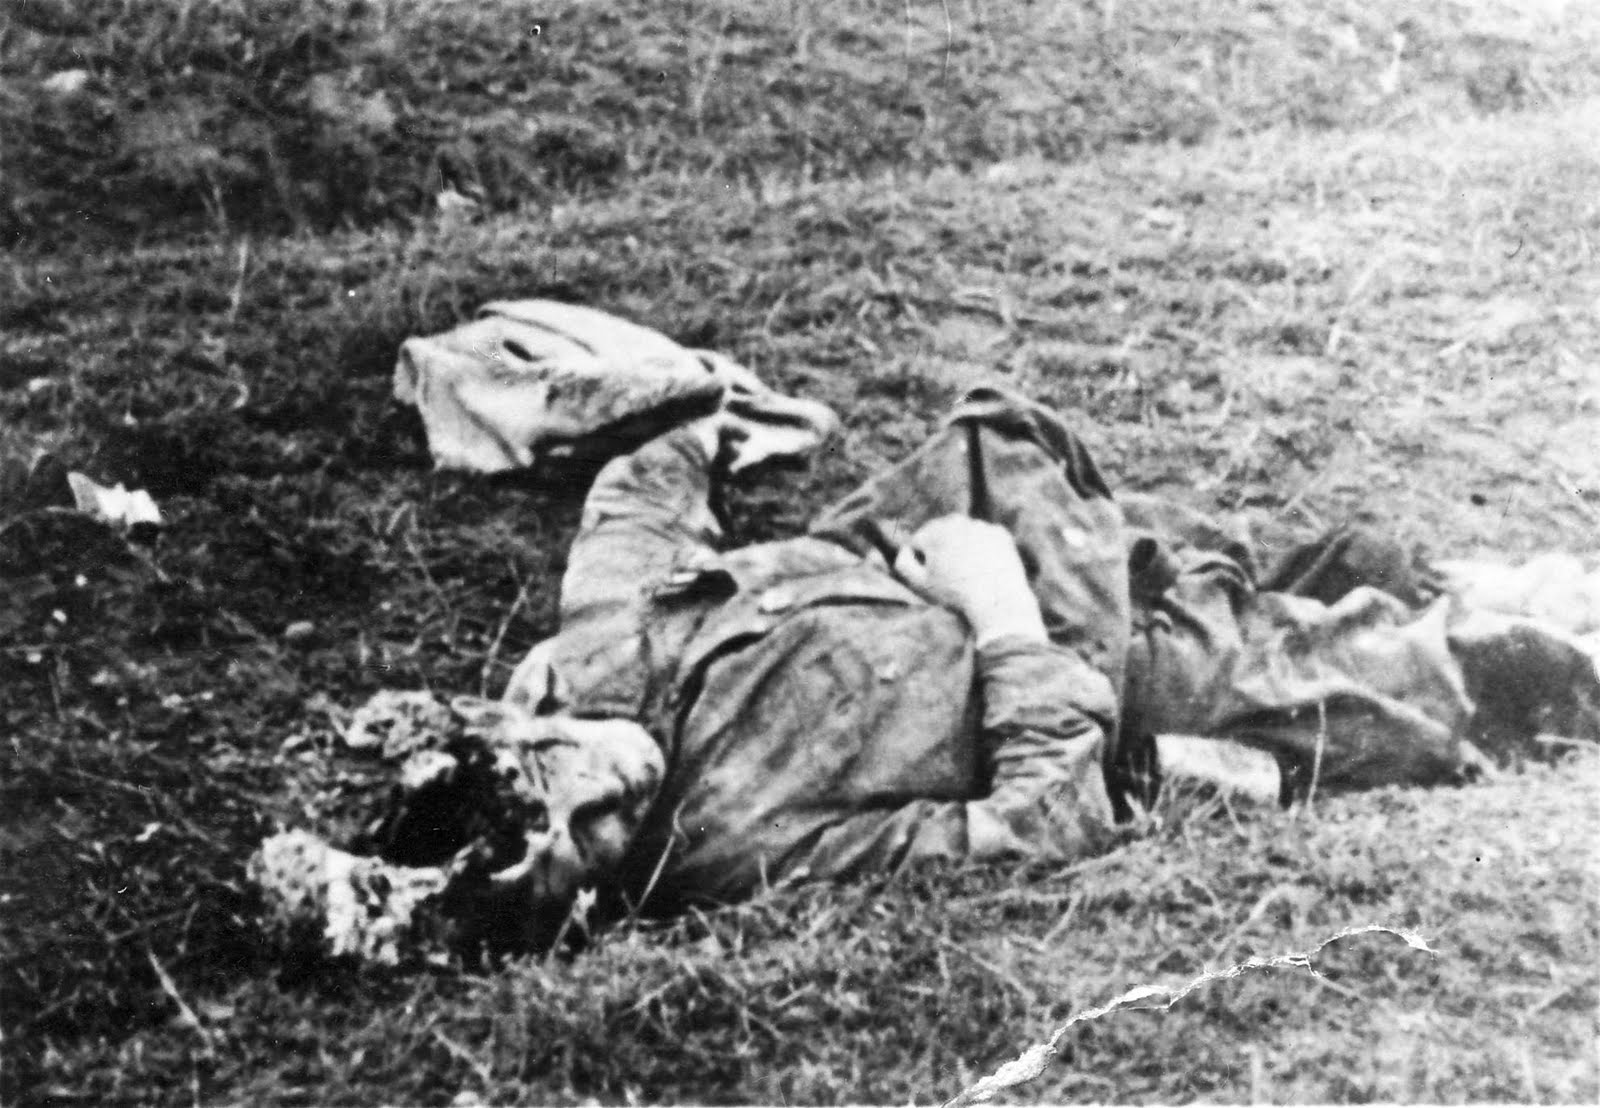 soldats soviétiques Dead%2BRussian%2Bsoldier%2Bin%2Bthe%2BOperation%2BBarbarossa